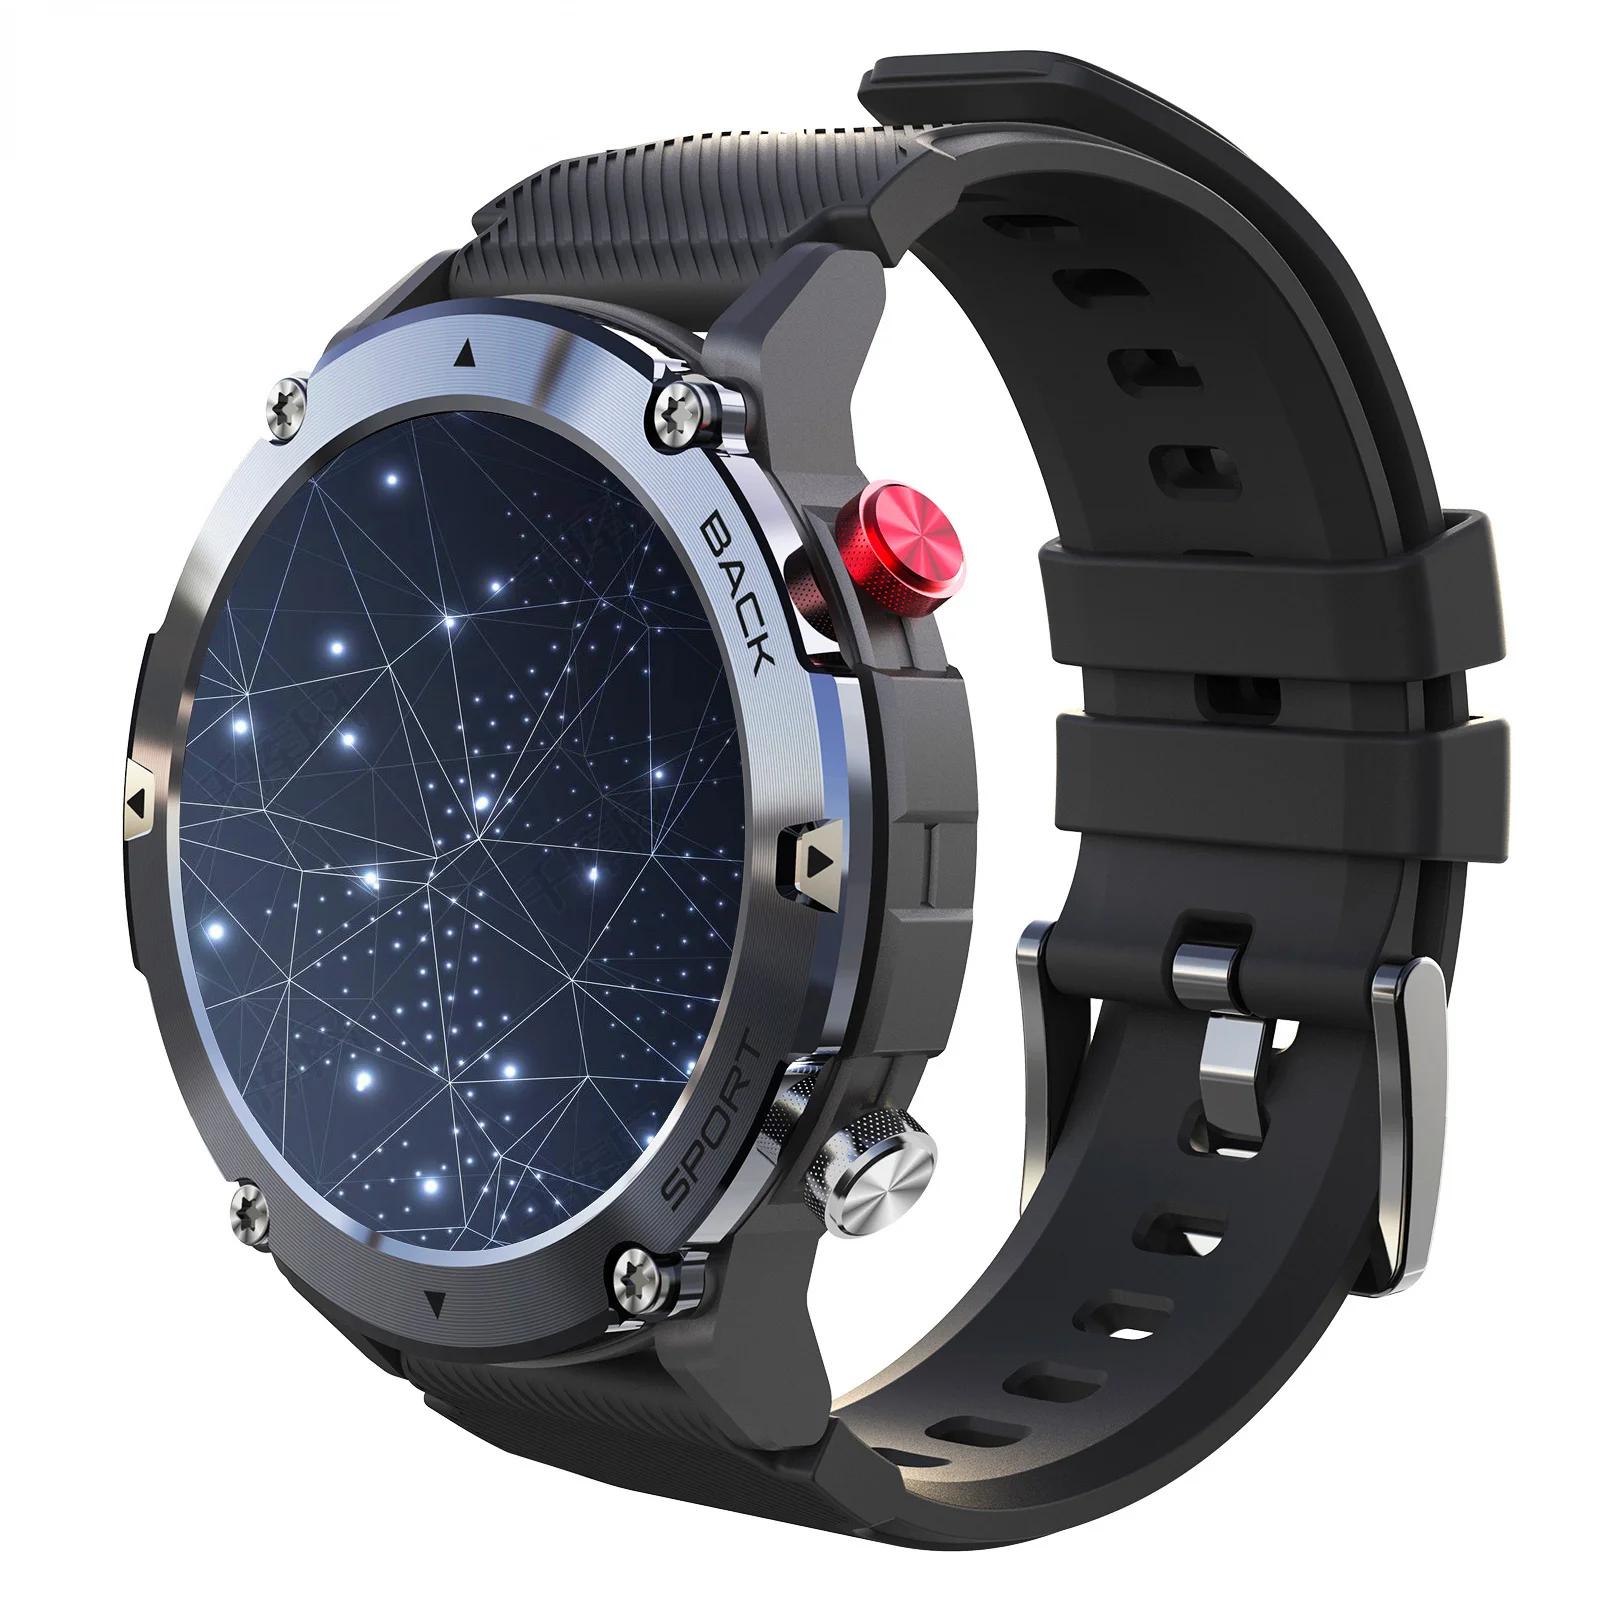 

Lf26max Reloj умные часы, умные часы с Bluetooth, подлинные часы